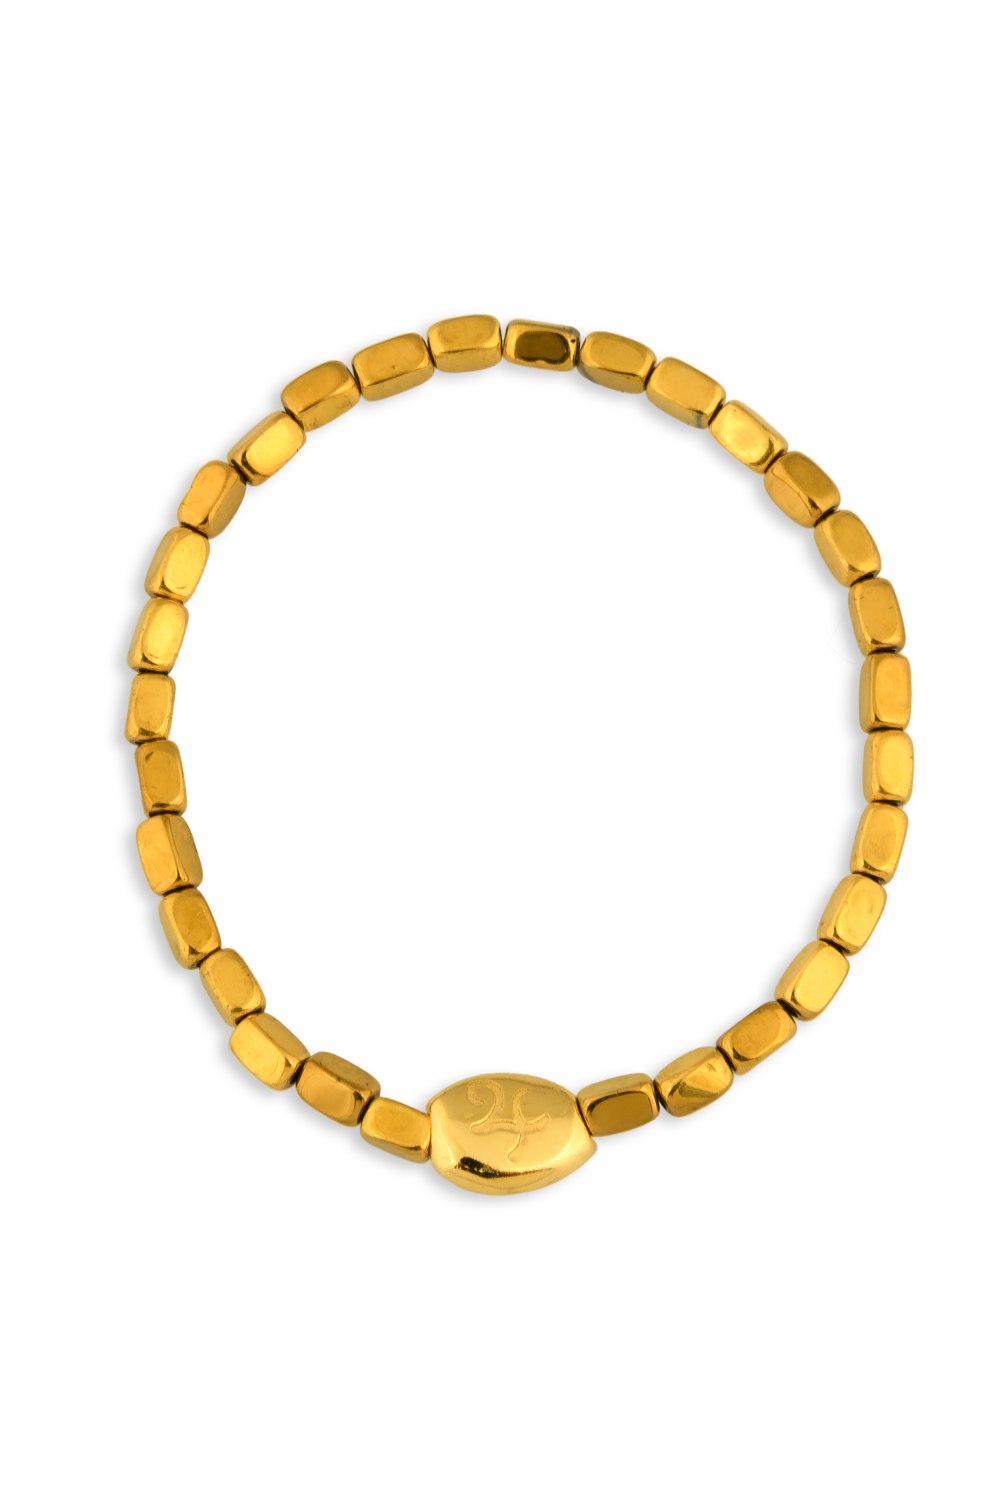 KESSARIS - Lucky Charm Feel the 24 Thunder Hematite Beaded Bracelet